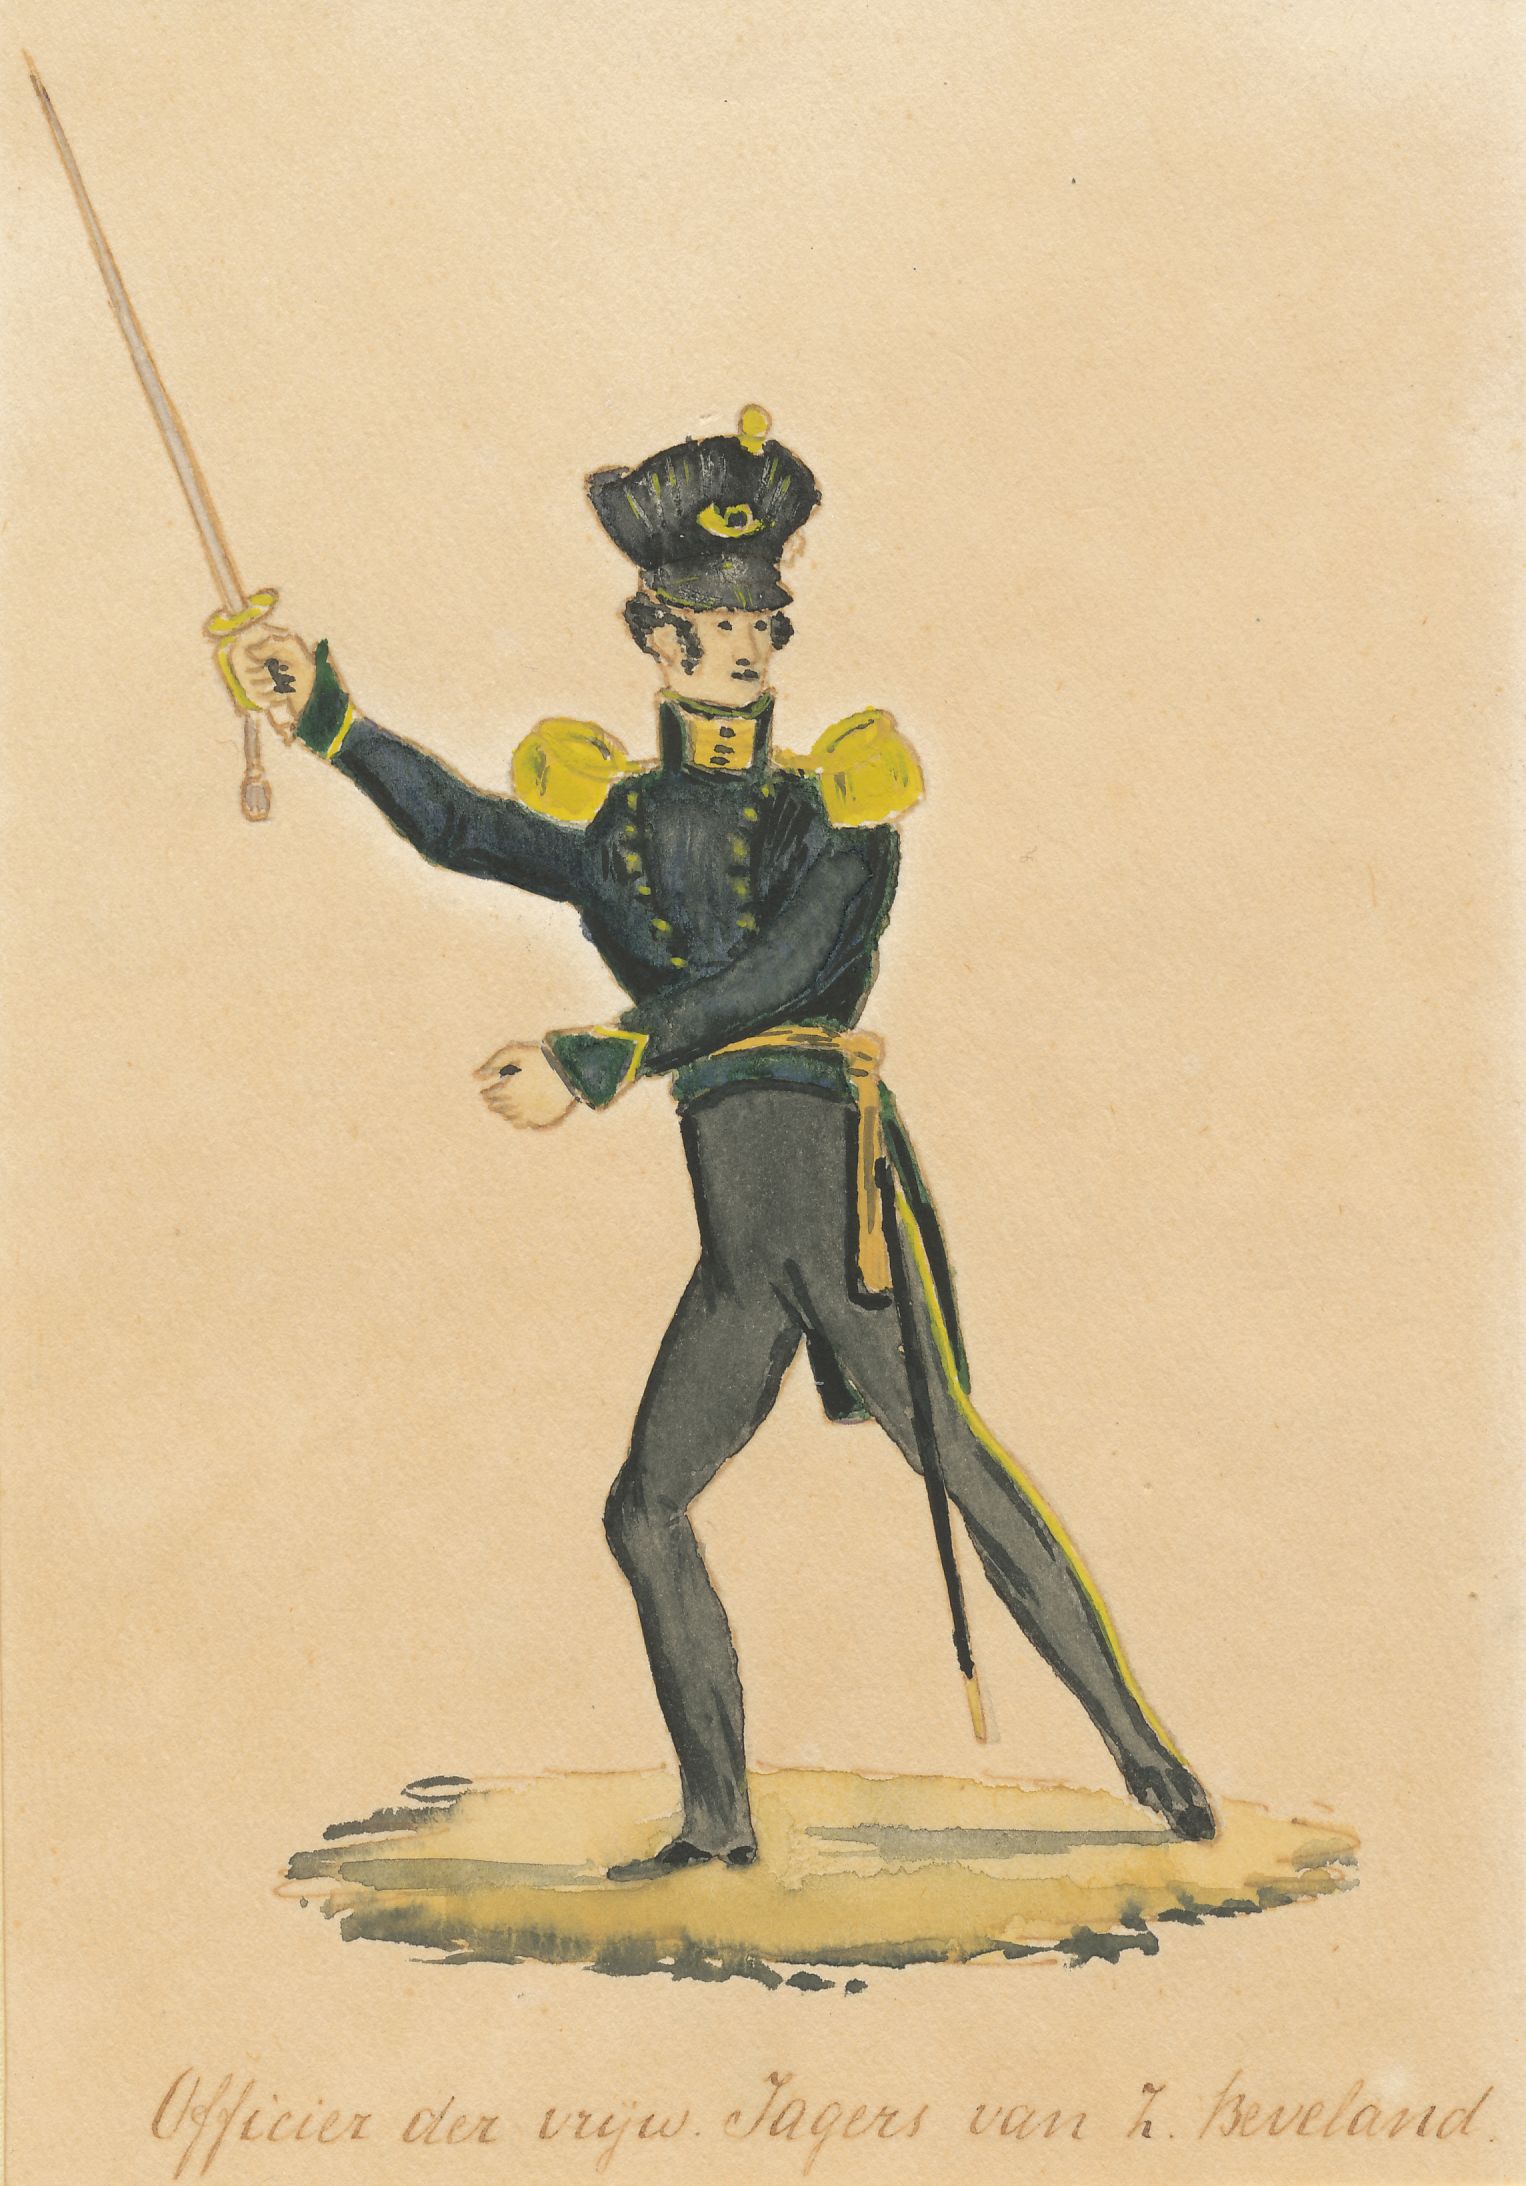 Officier van de vrijwillige jagers van Zuid-Beveland, 1830. HMDB.